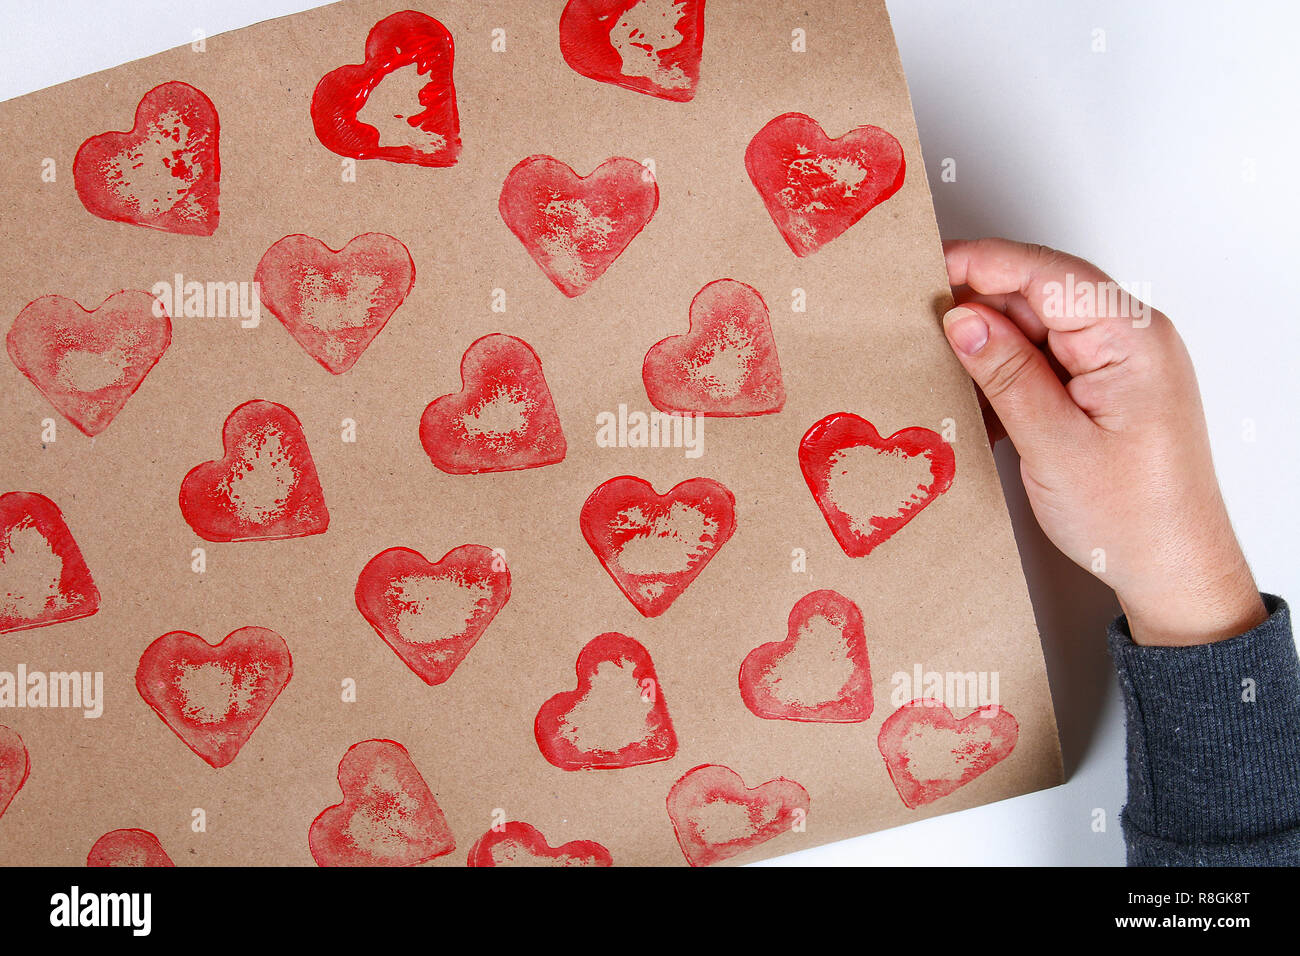 Diy. L'emballage de cadeaux pour la Saint-Valentin. Cadeaux de papier kraft  et de pommes de terre en forme de timbre coeur et rouge faire vous-même le  14 février. Vue supérieure o Photo